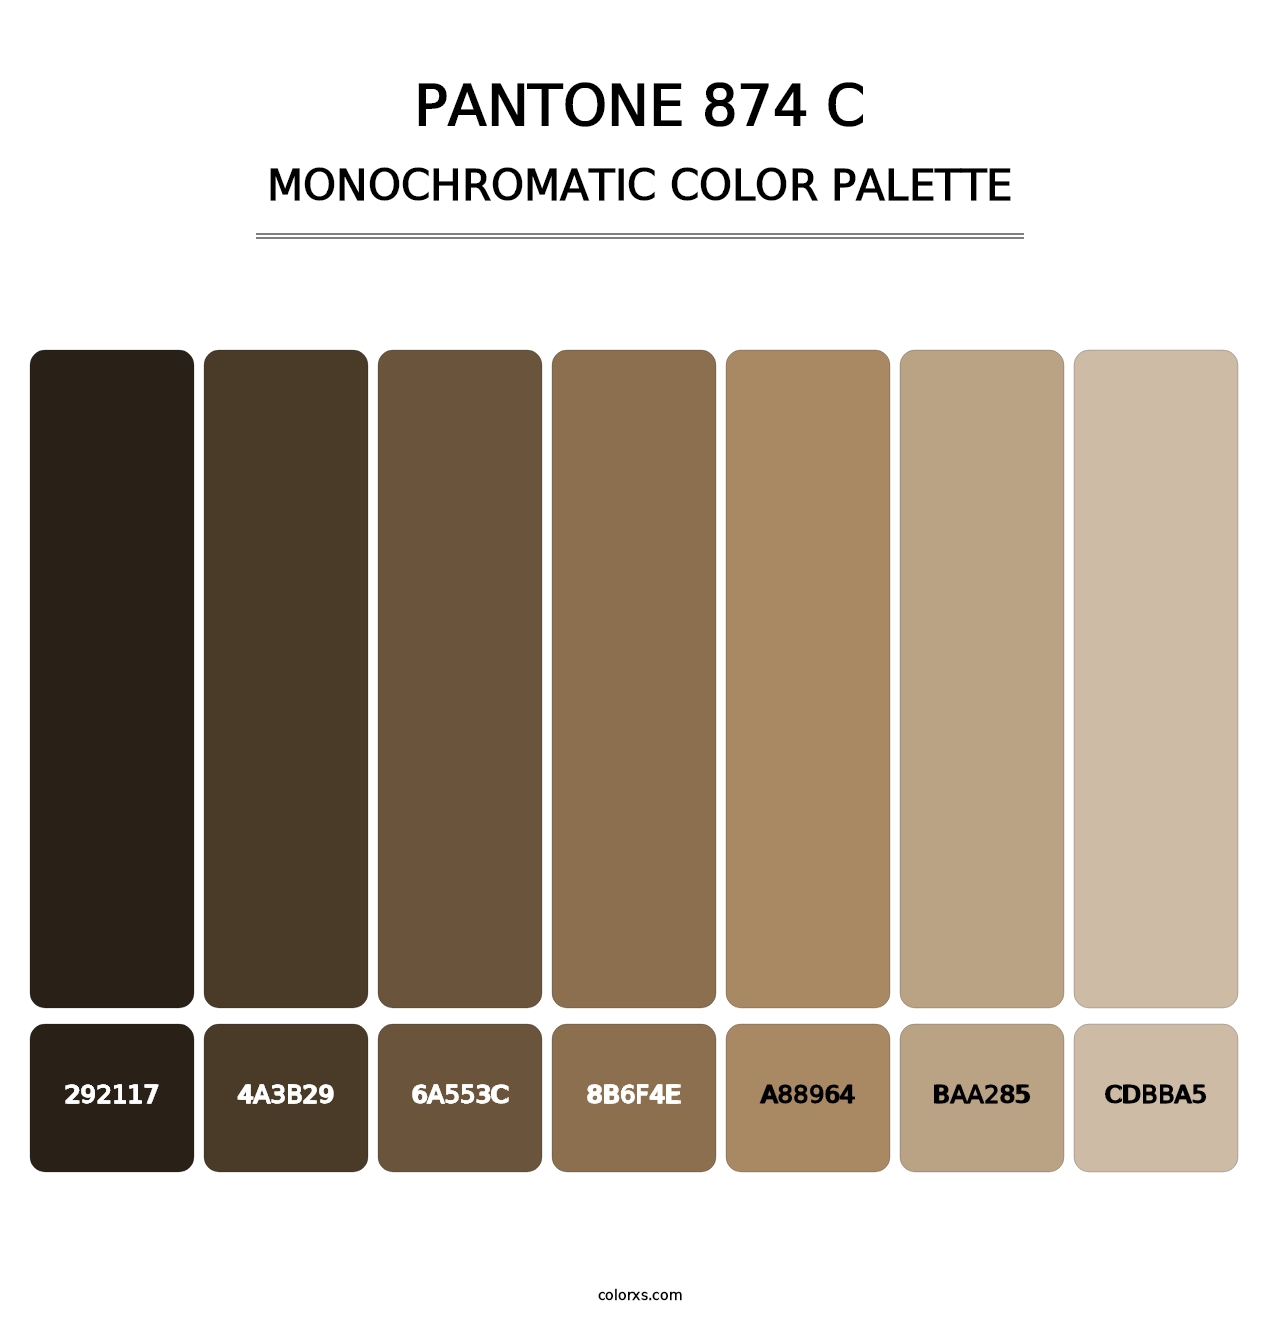 PANTONE 874 C - Monochromatic Color Palette